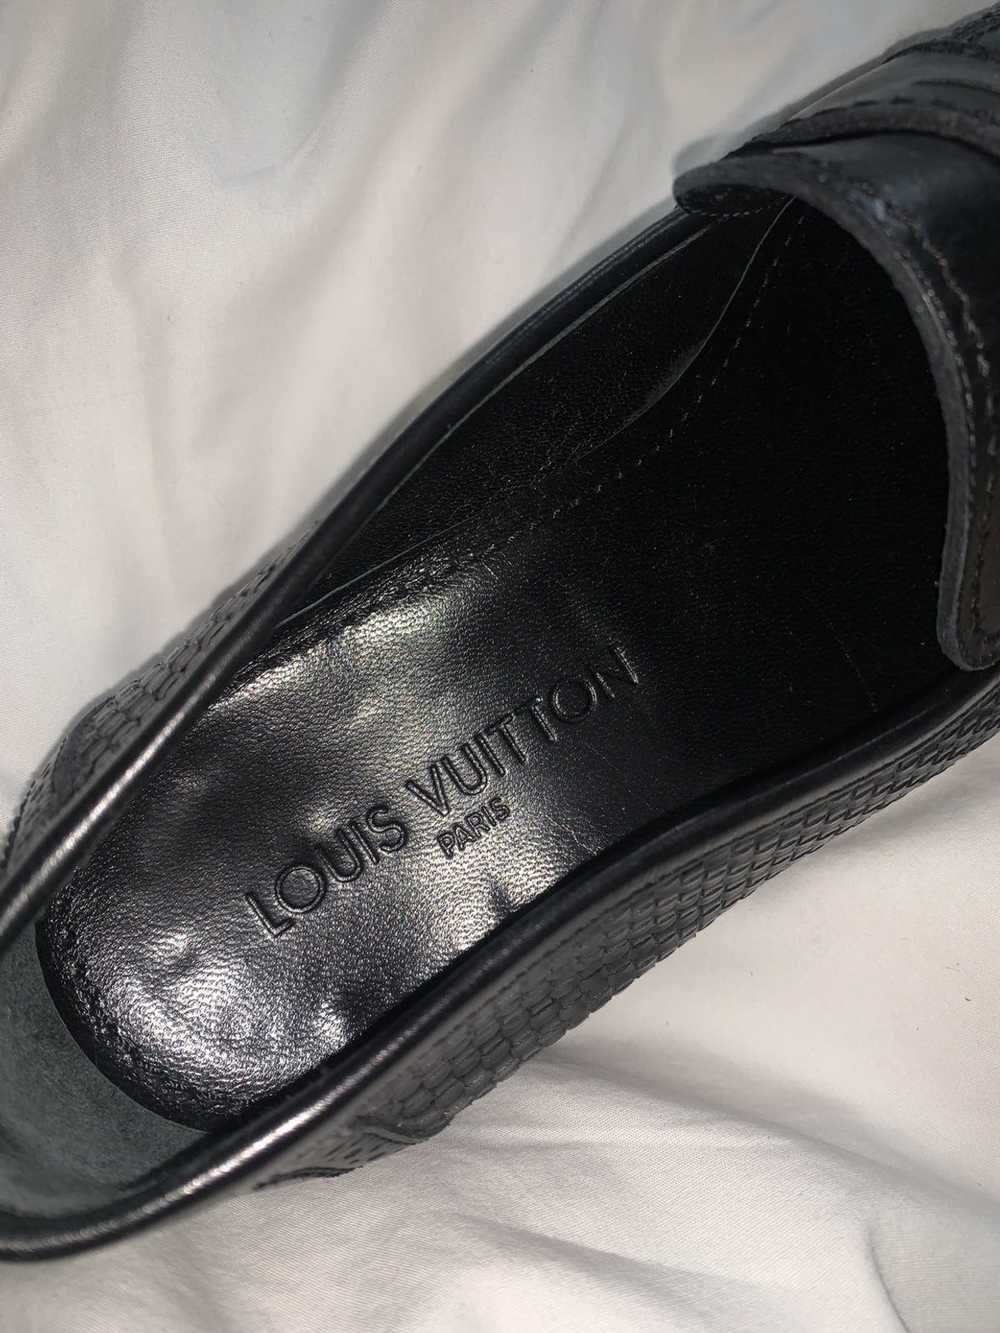 Louis Vuitton LV Formal Dimension Richelieu - Men - Shoes 1A9UZL - $156.00  